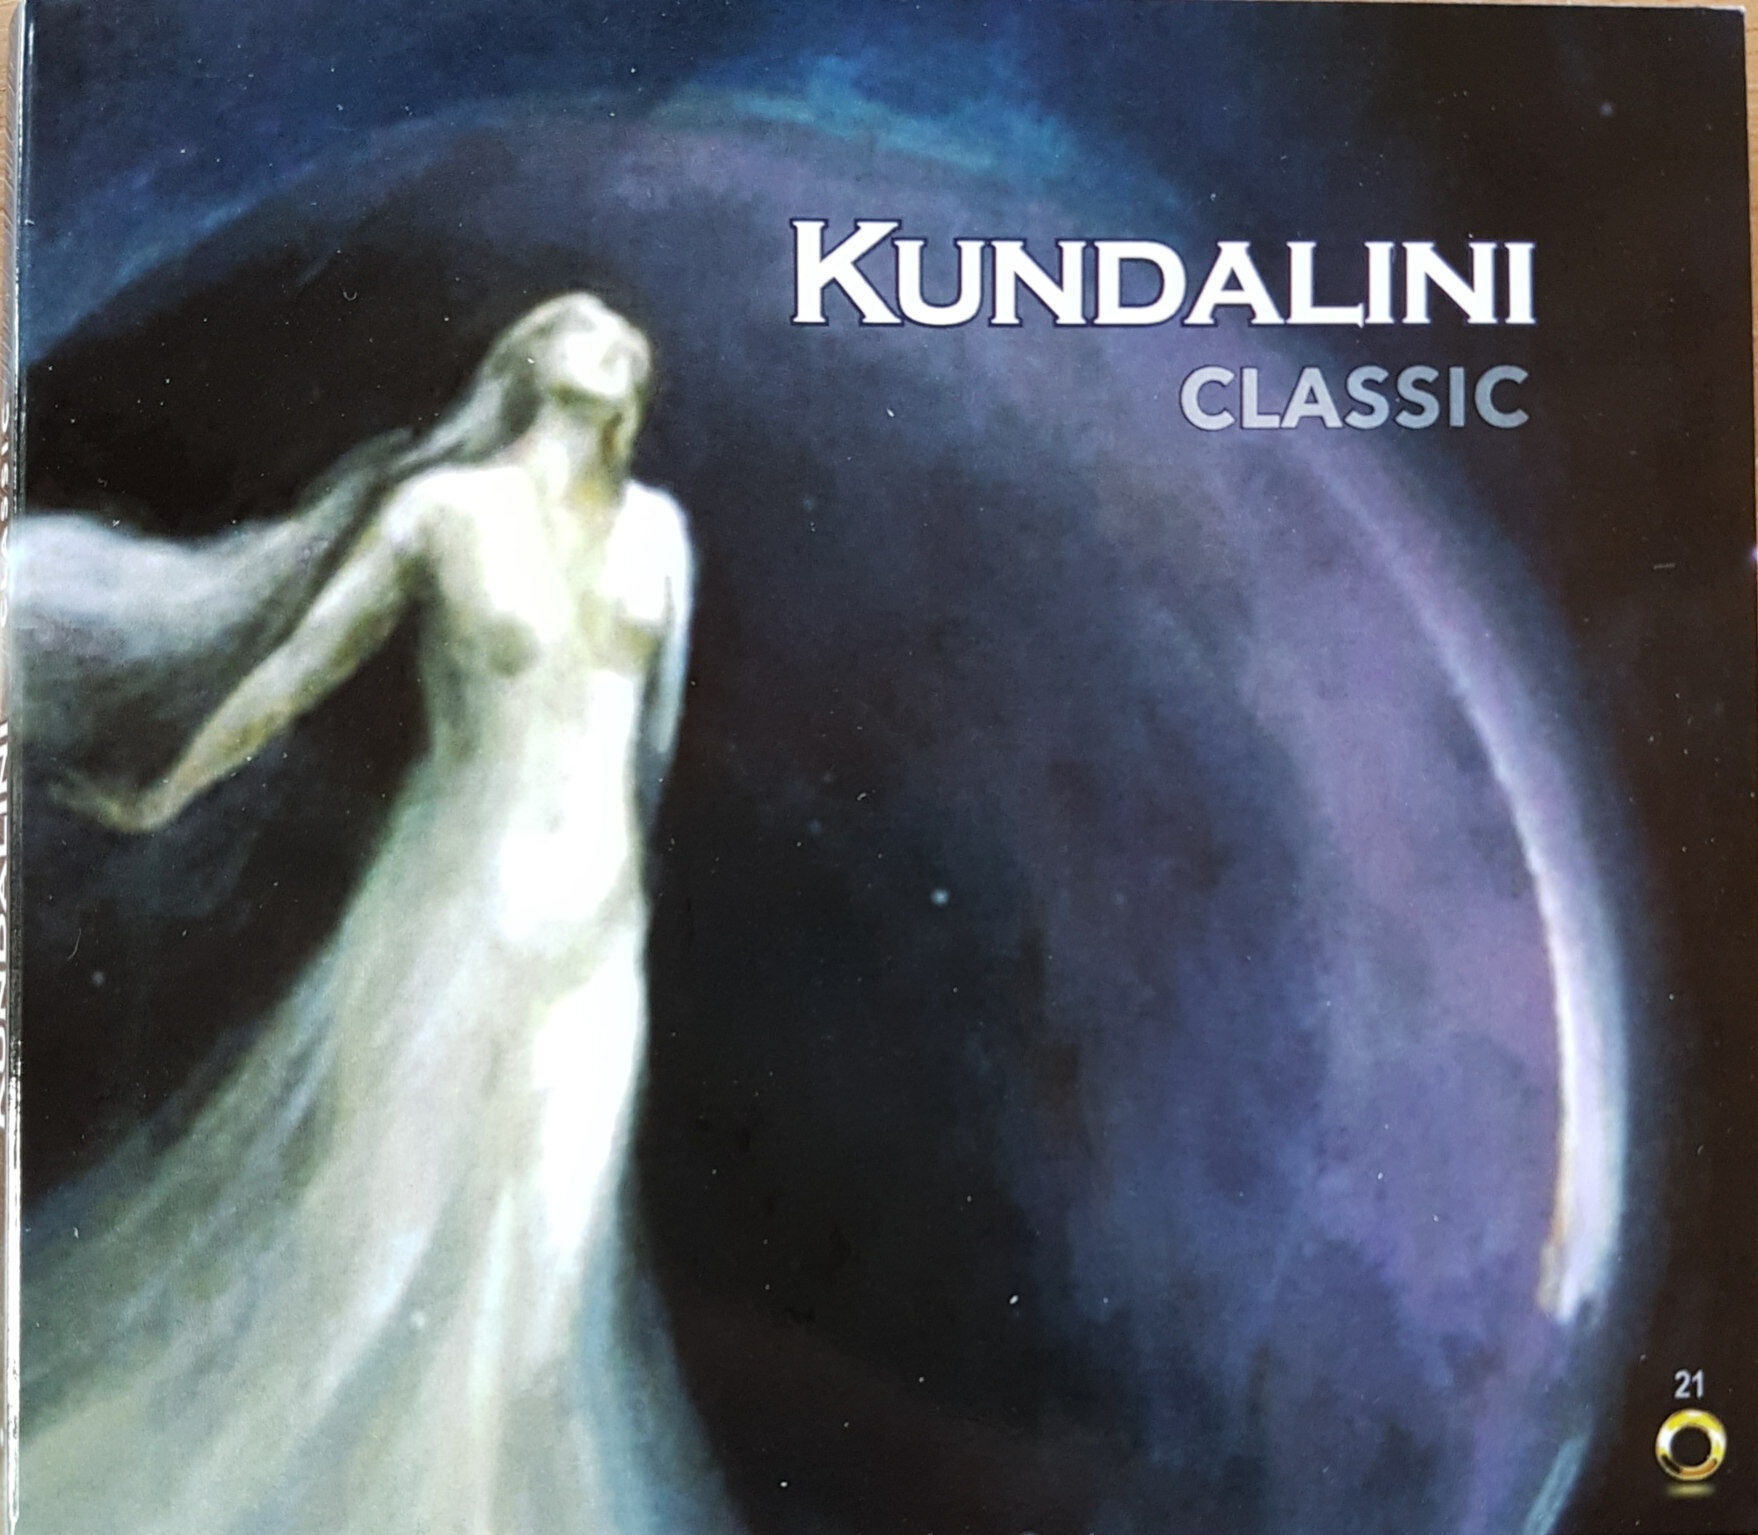 Kundalini classic